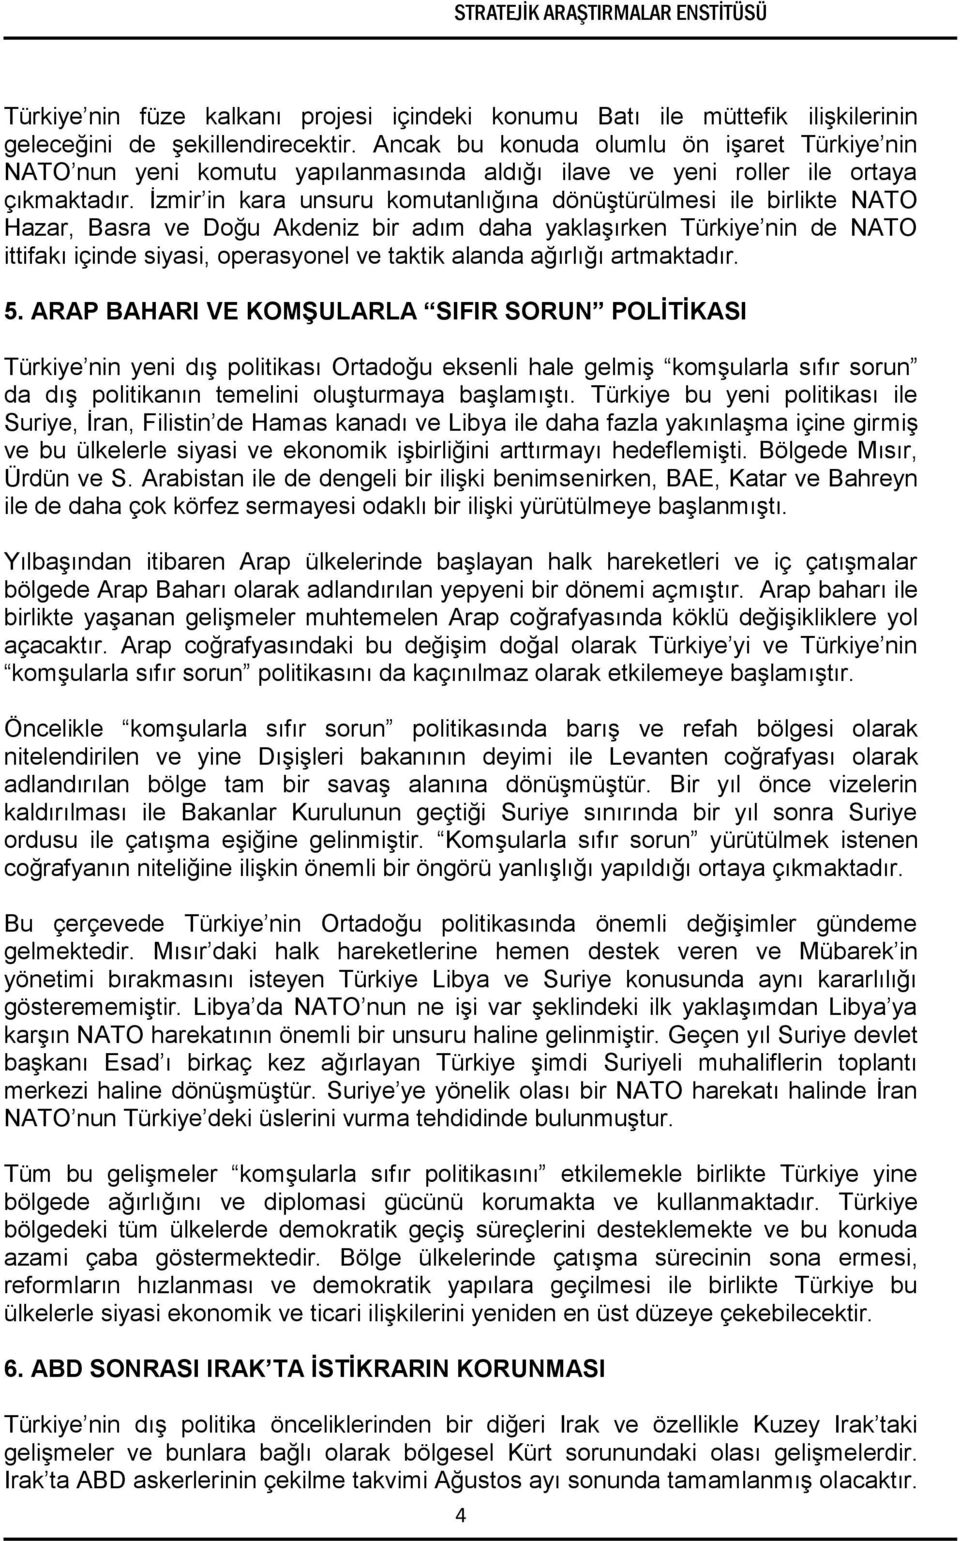 İzmir in kara unsuru komutanlığına dönüştürülmesi ile birlikte NATO Hazar, Basra ve Doğu Akdeniz bir adım daha yaklaşırken Türkiye nin de NATO ittifakı içinde siyasi, operasyonel ve taktik alanda